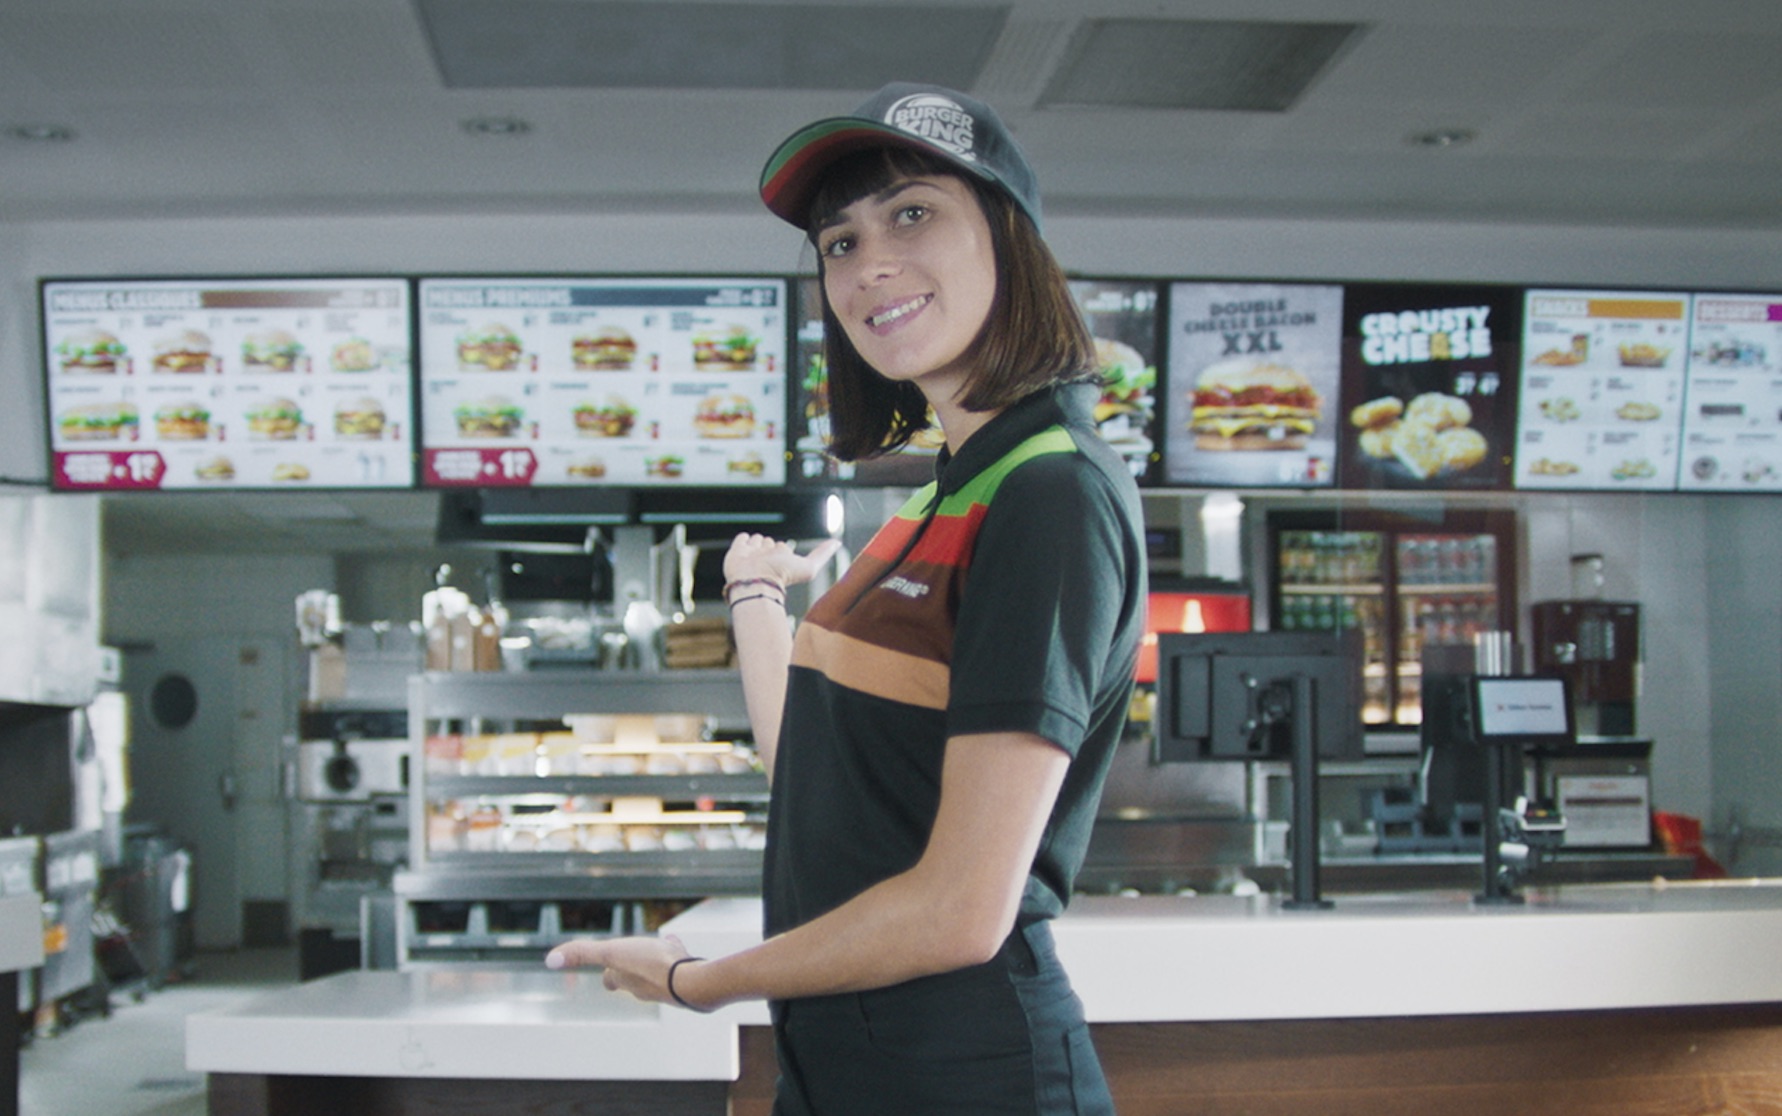 Buzzman vertrekkensklaar voor Burger King